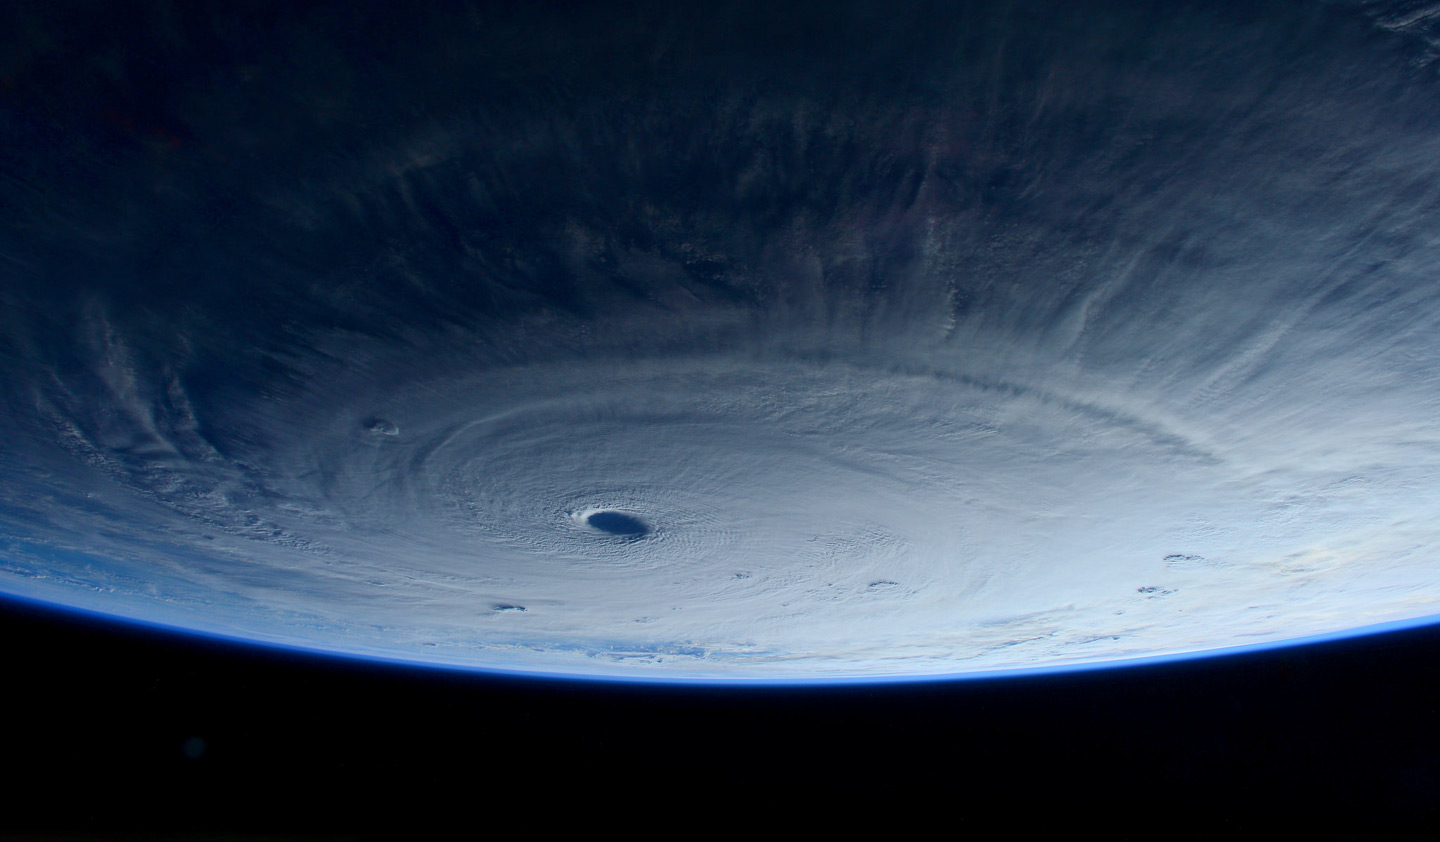 Siêu bão Maysak hiện lên rõ ràng qua ảnh chụp từ vệ tinh